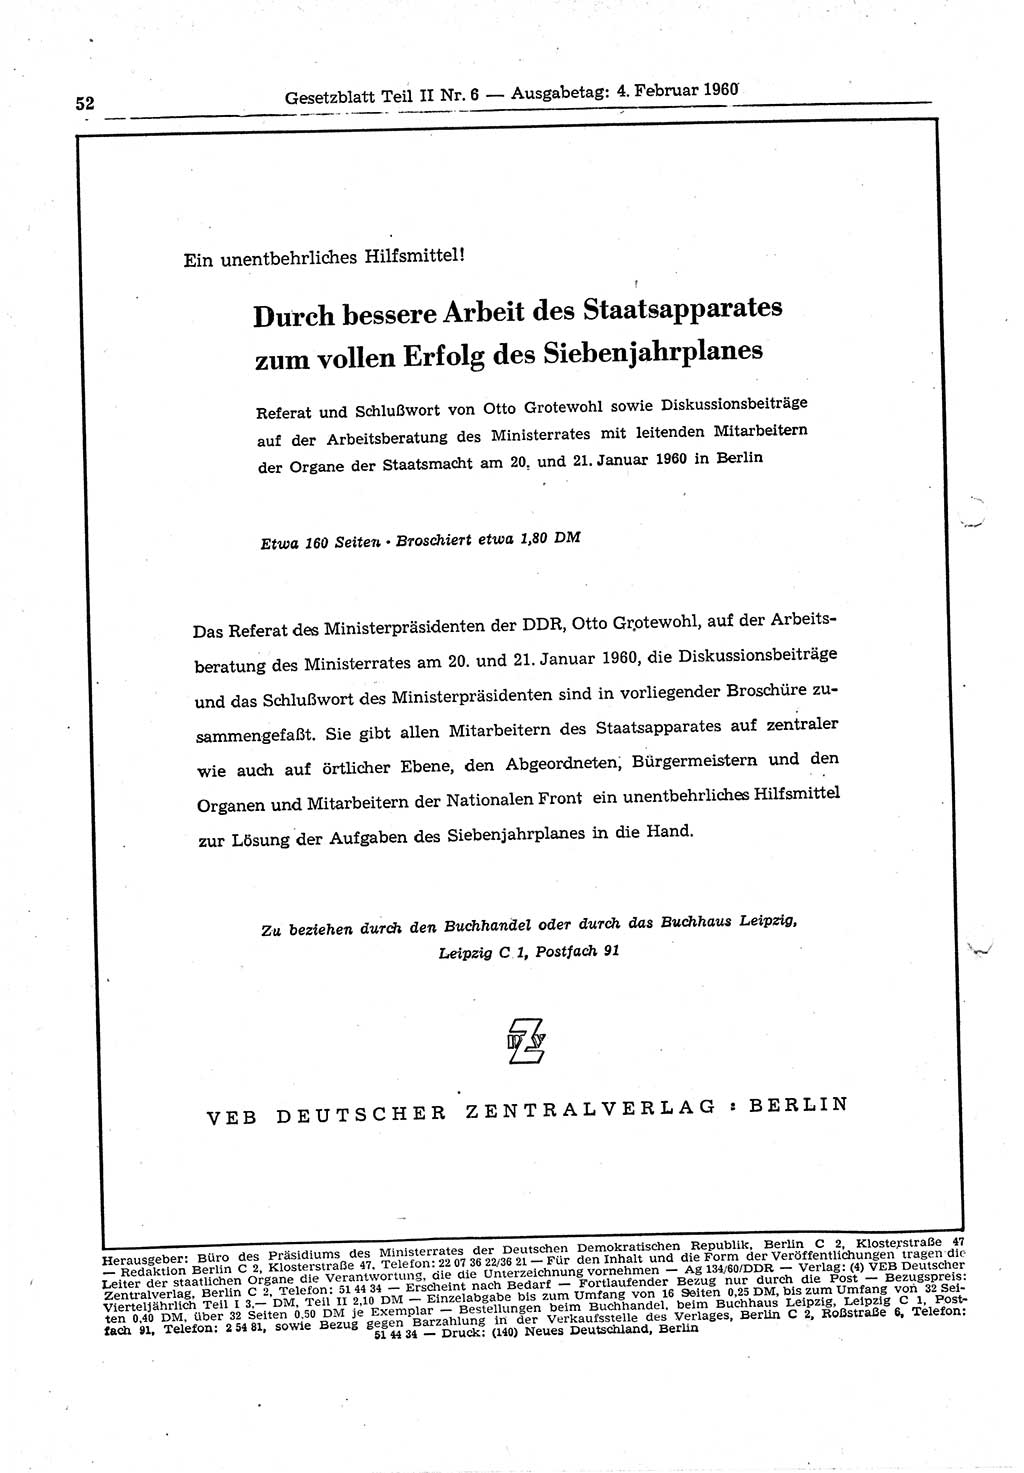 Gesetzblatt (GBl.) der Deutschen Demokratischen Republik (DDR) Teil ⅠⅠ 1960, Seite 52 (GBl. DDR ⅠⅠ 1960, S. 52)